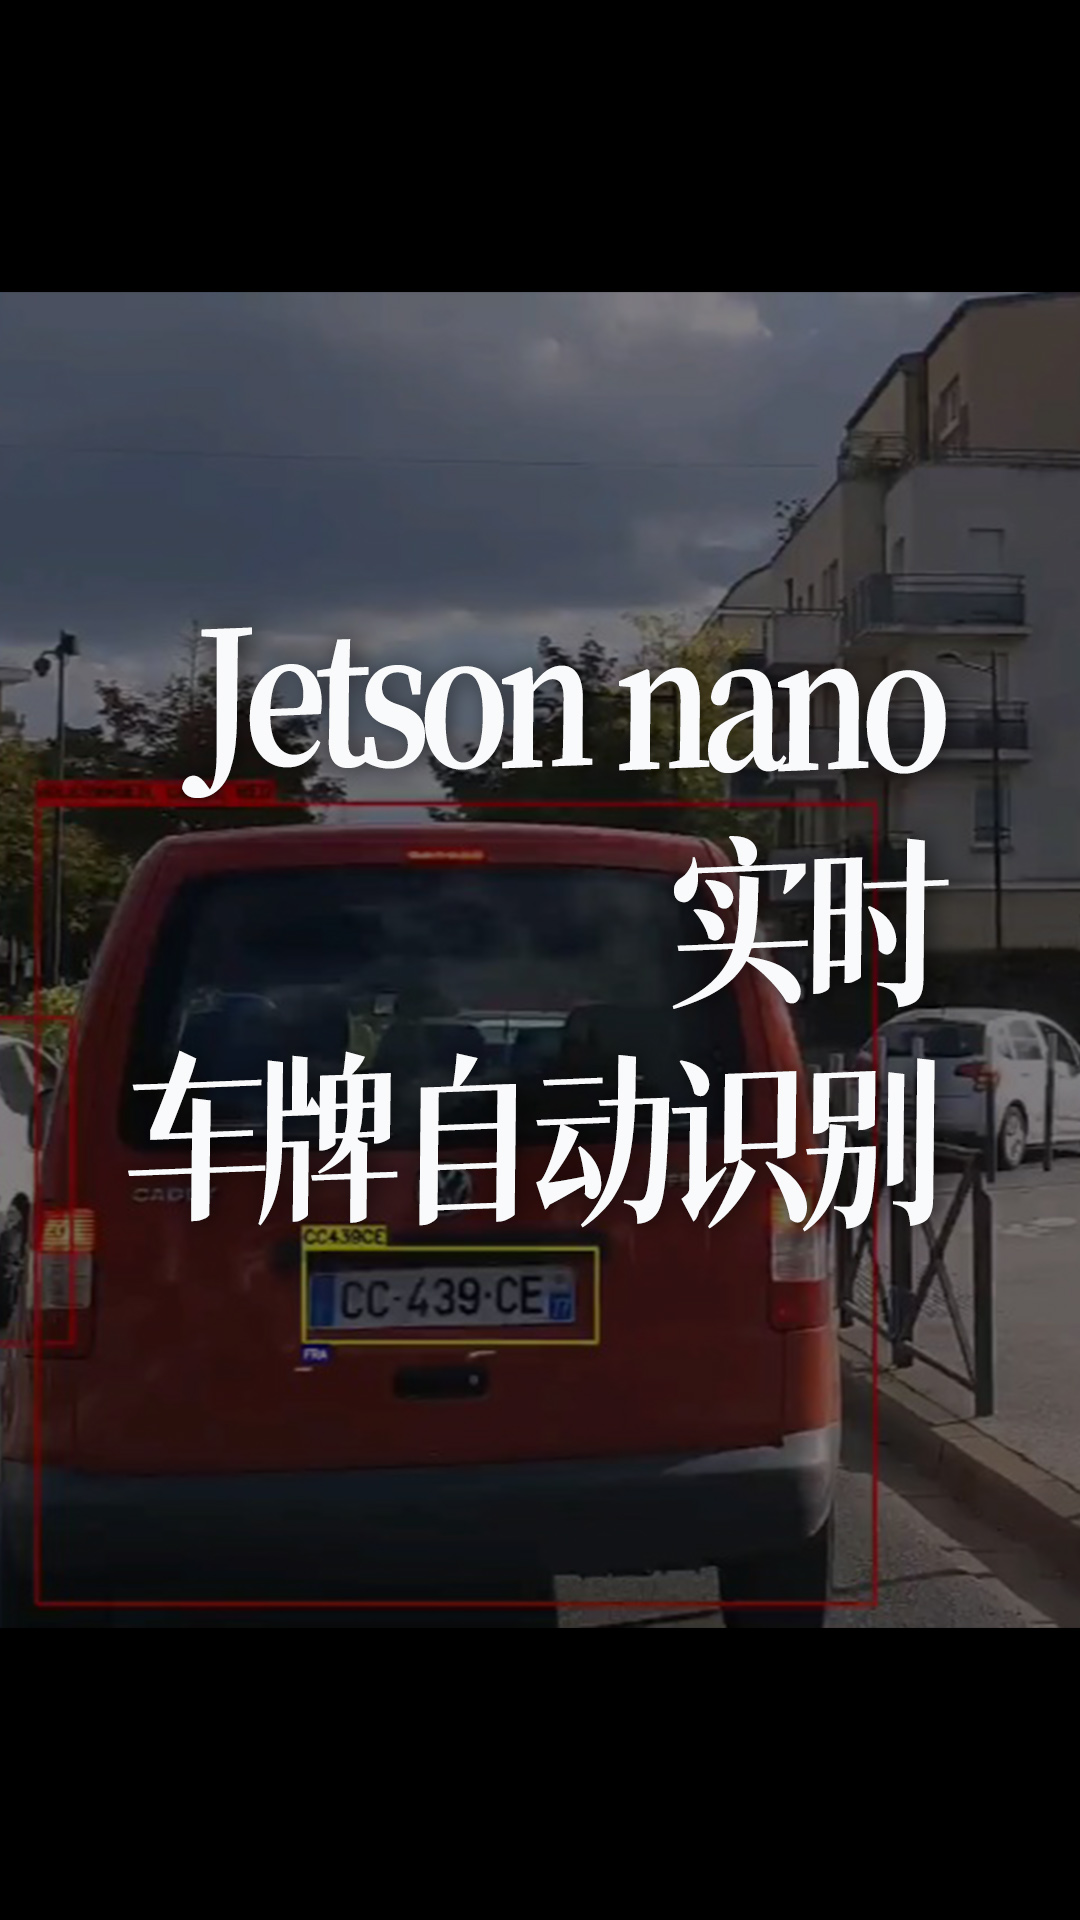 Jetson nano实时车牌自动识别